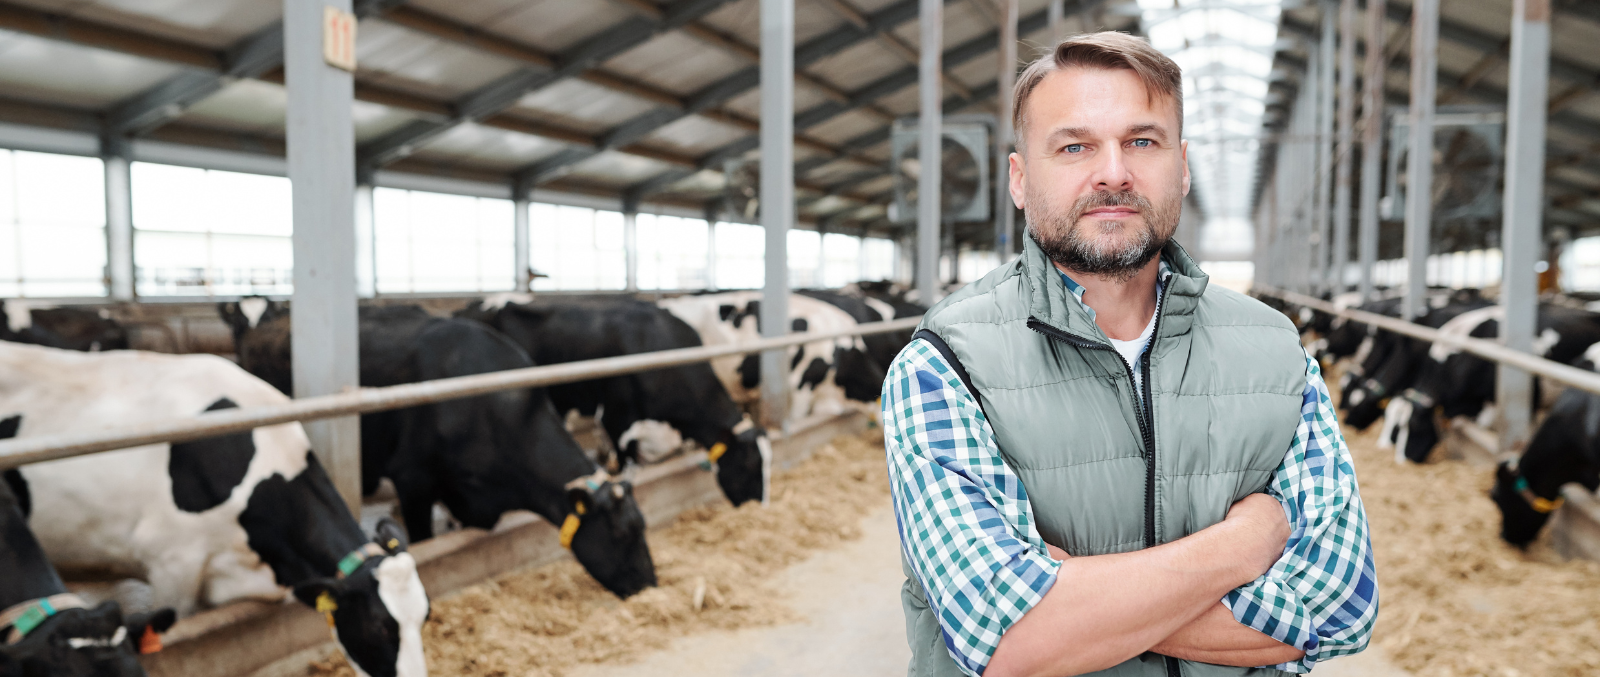 Male Farmer Standing Inside Cattle Barn He Built With A Farm Loan